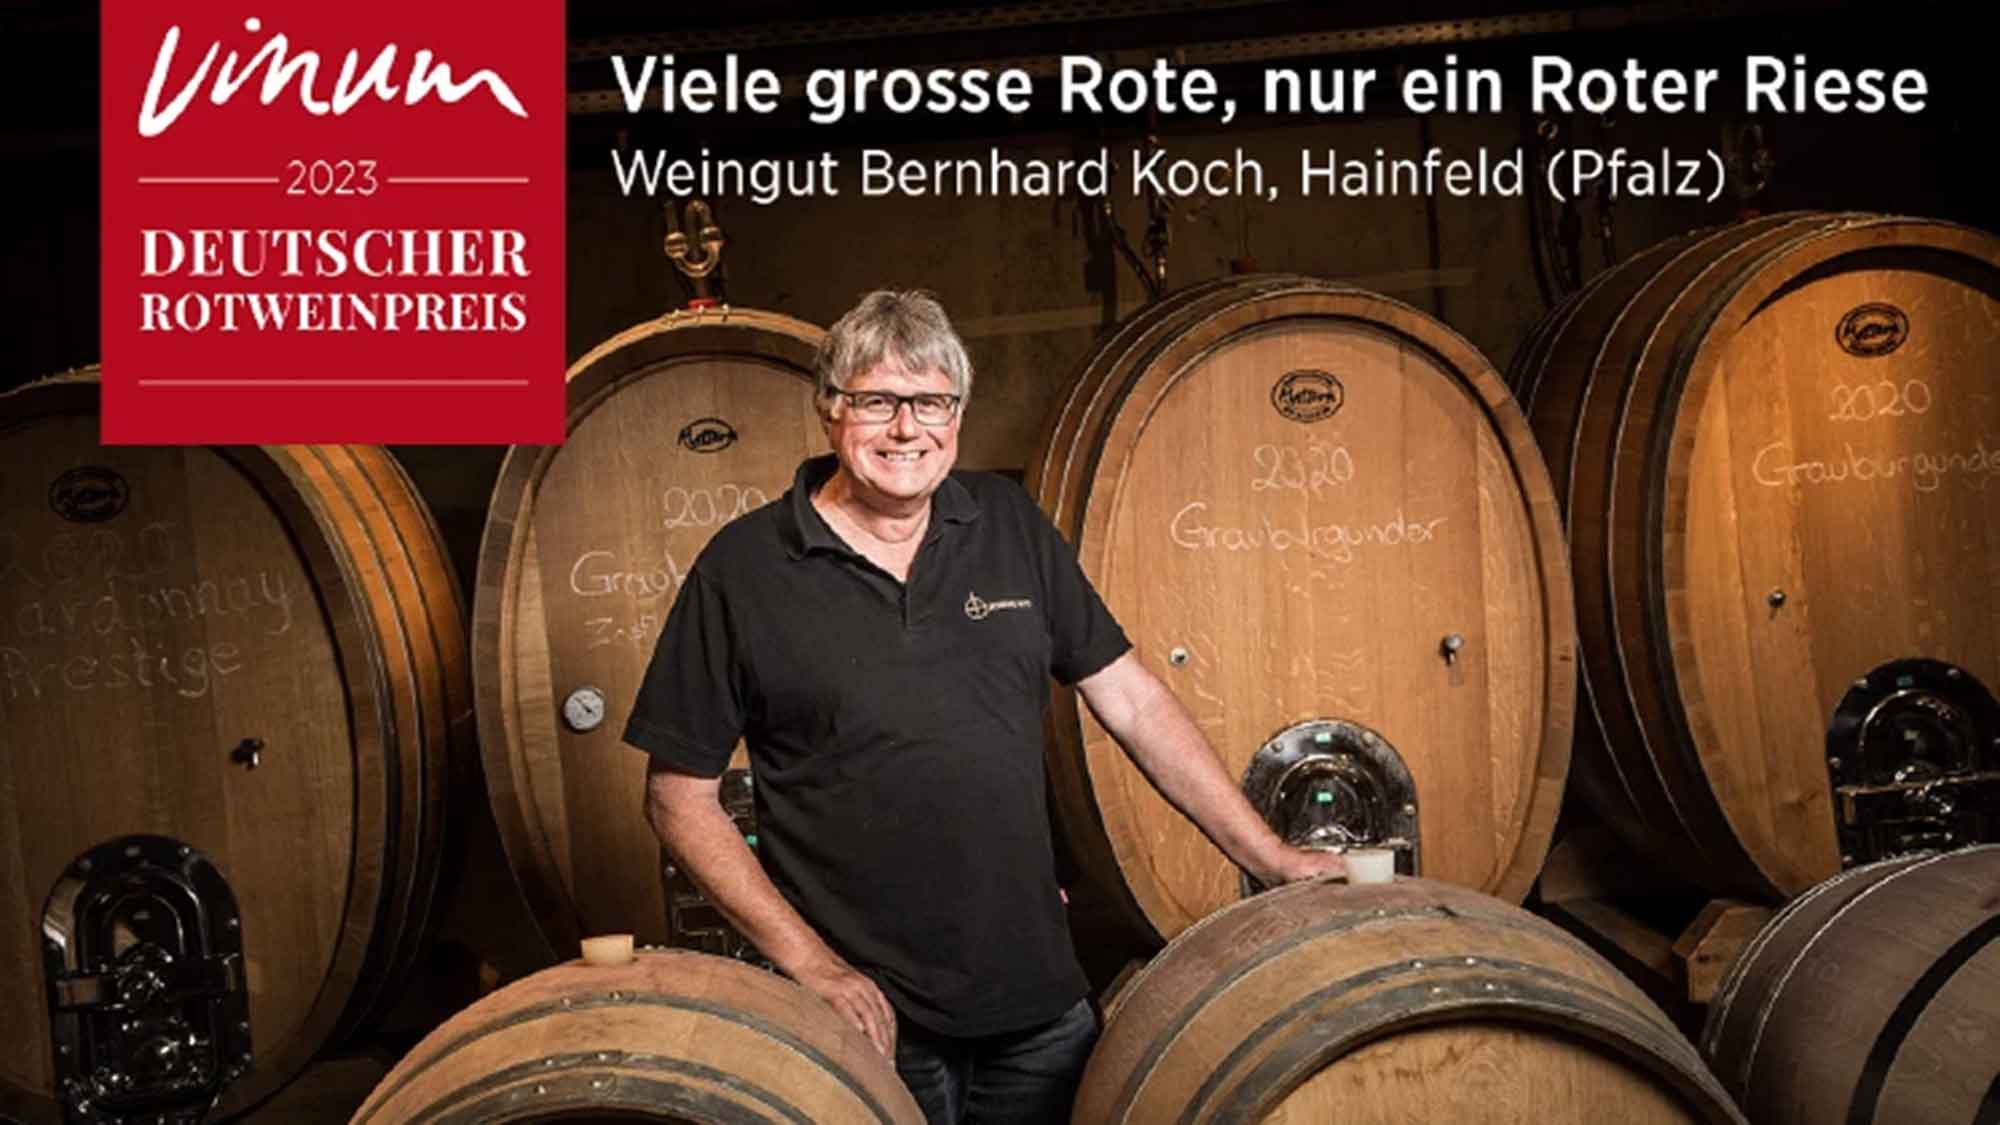 Deutscher Rotweinpreis 2023: Die Pfalz stellt den Roten Riesen, der Newcomer des Jahres kommt vom Bodensee